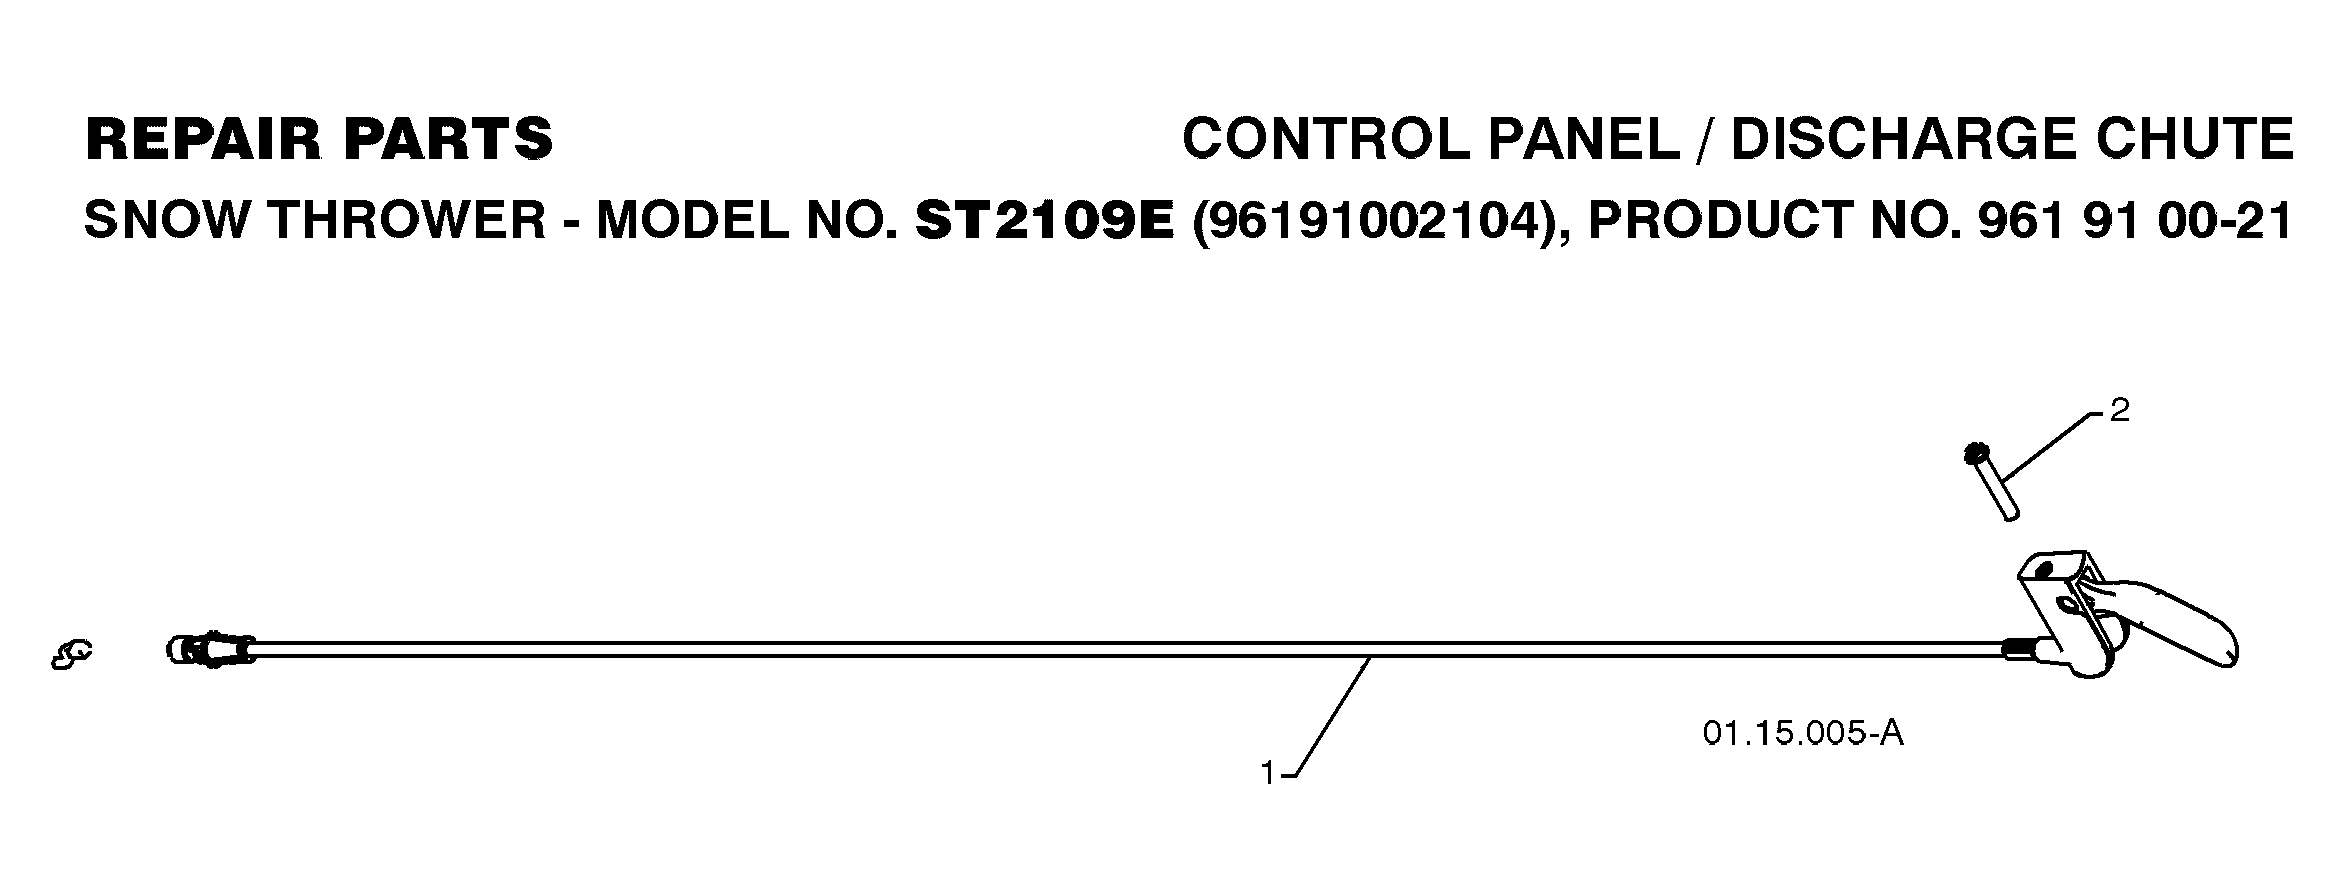 Control panel and deflektor 532421249, 874041024